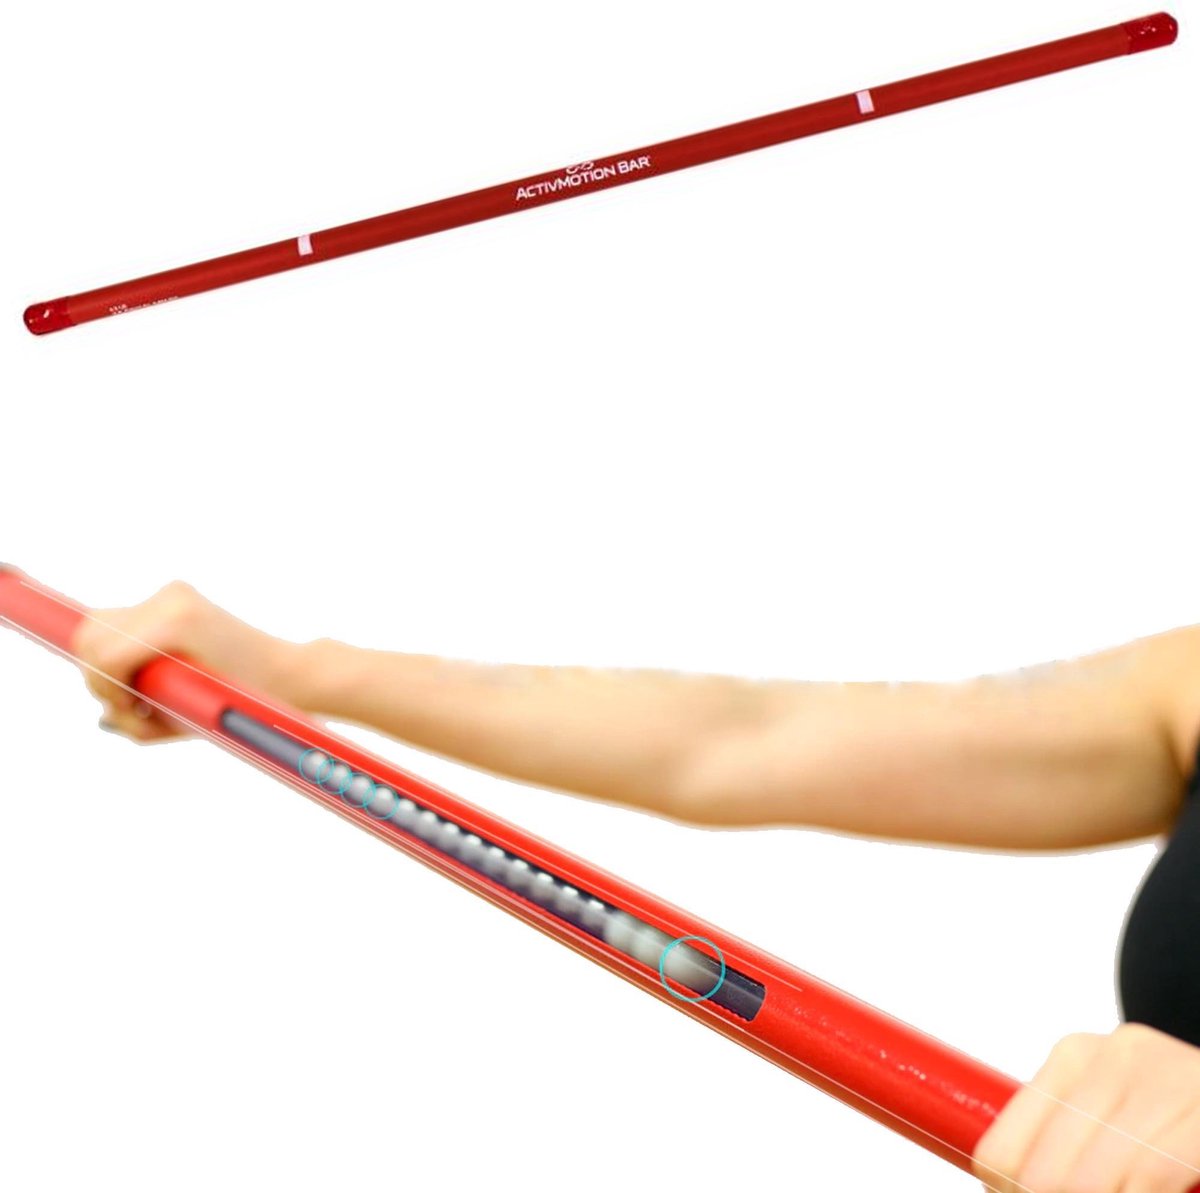 ActivMotion Fitness Stang Glimpse 2 kg - Fitness Stick met Bewegende Gewichten erin - voor Krachttraining, Core Training, Balans en Pilates